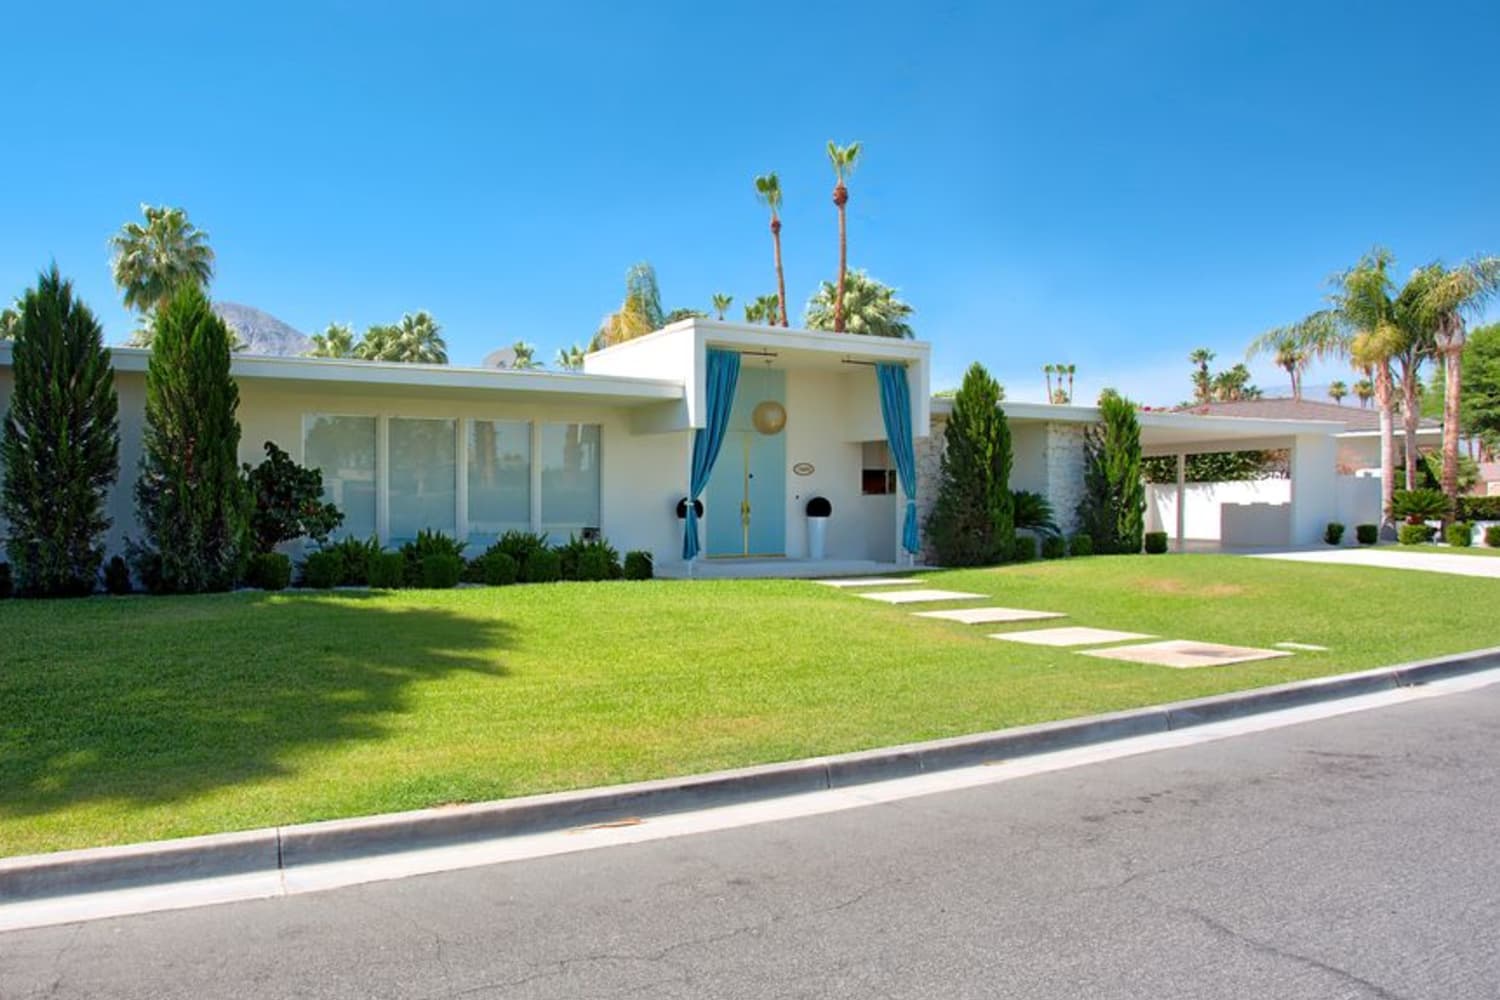 તમે લુસિલે બોલ અને દેશી અર્નાઝનું કેલિફોર્નિયાનું ઘર $ 500/રાત્રિ ભાડે આપી શકો છો